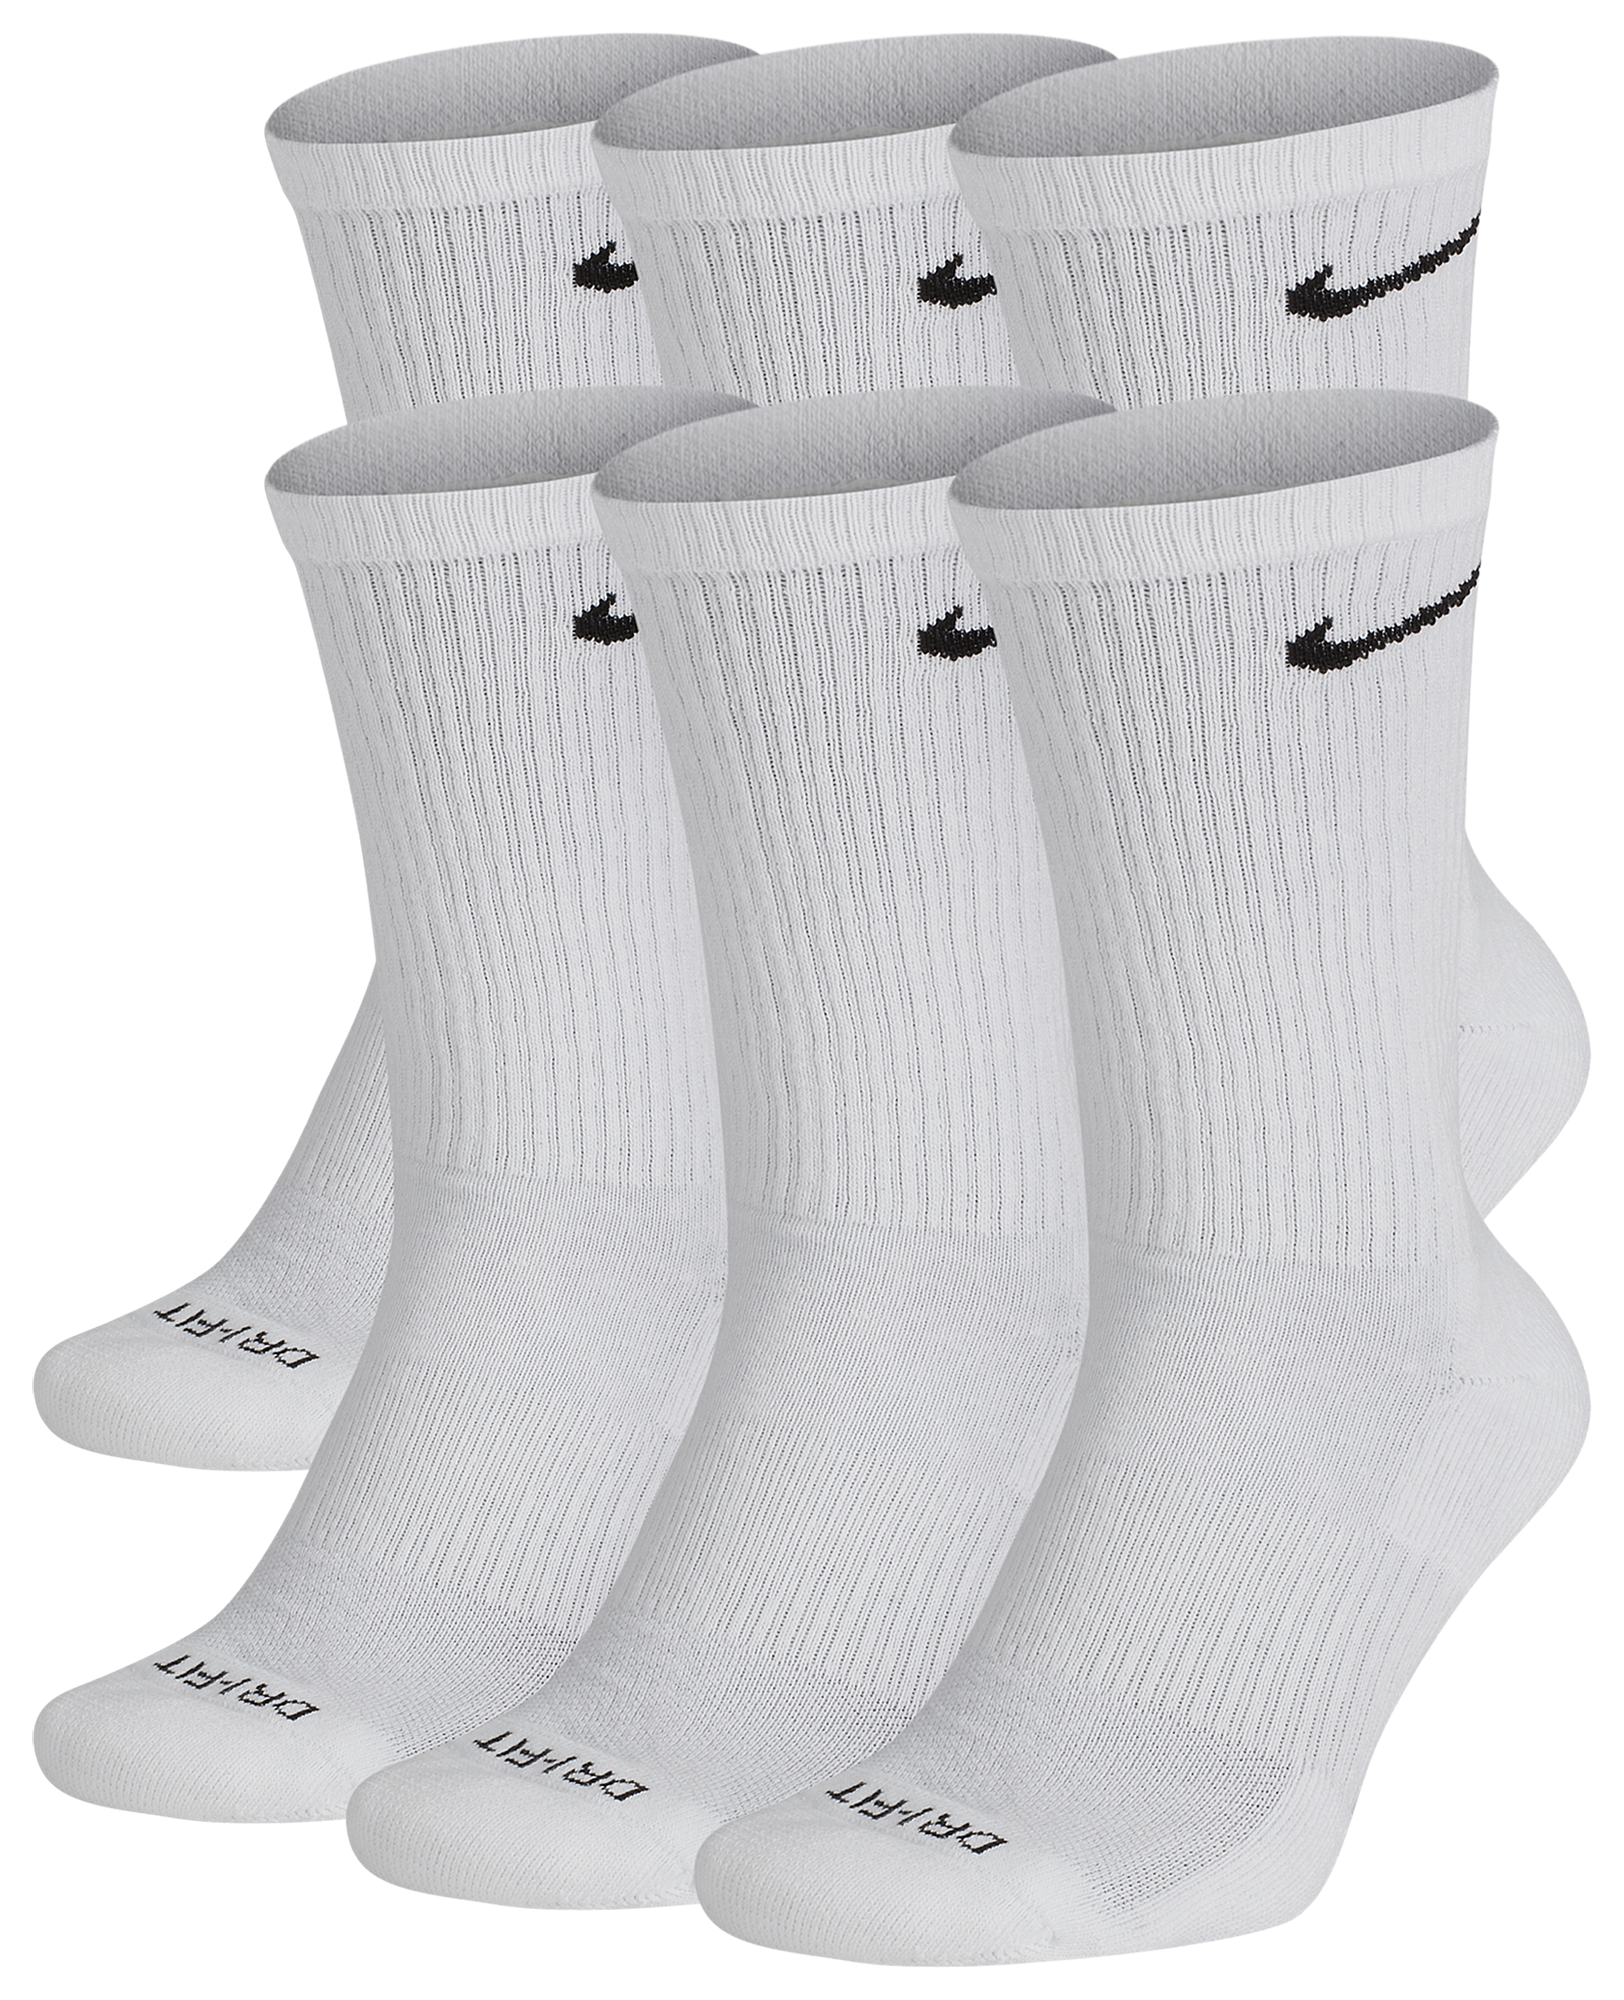 Dosering wees onder de indruk Voorlopige naam Nike 6 Pack Everyday Plus Cushioned Socks | Foot Locker